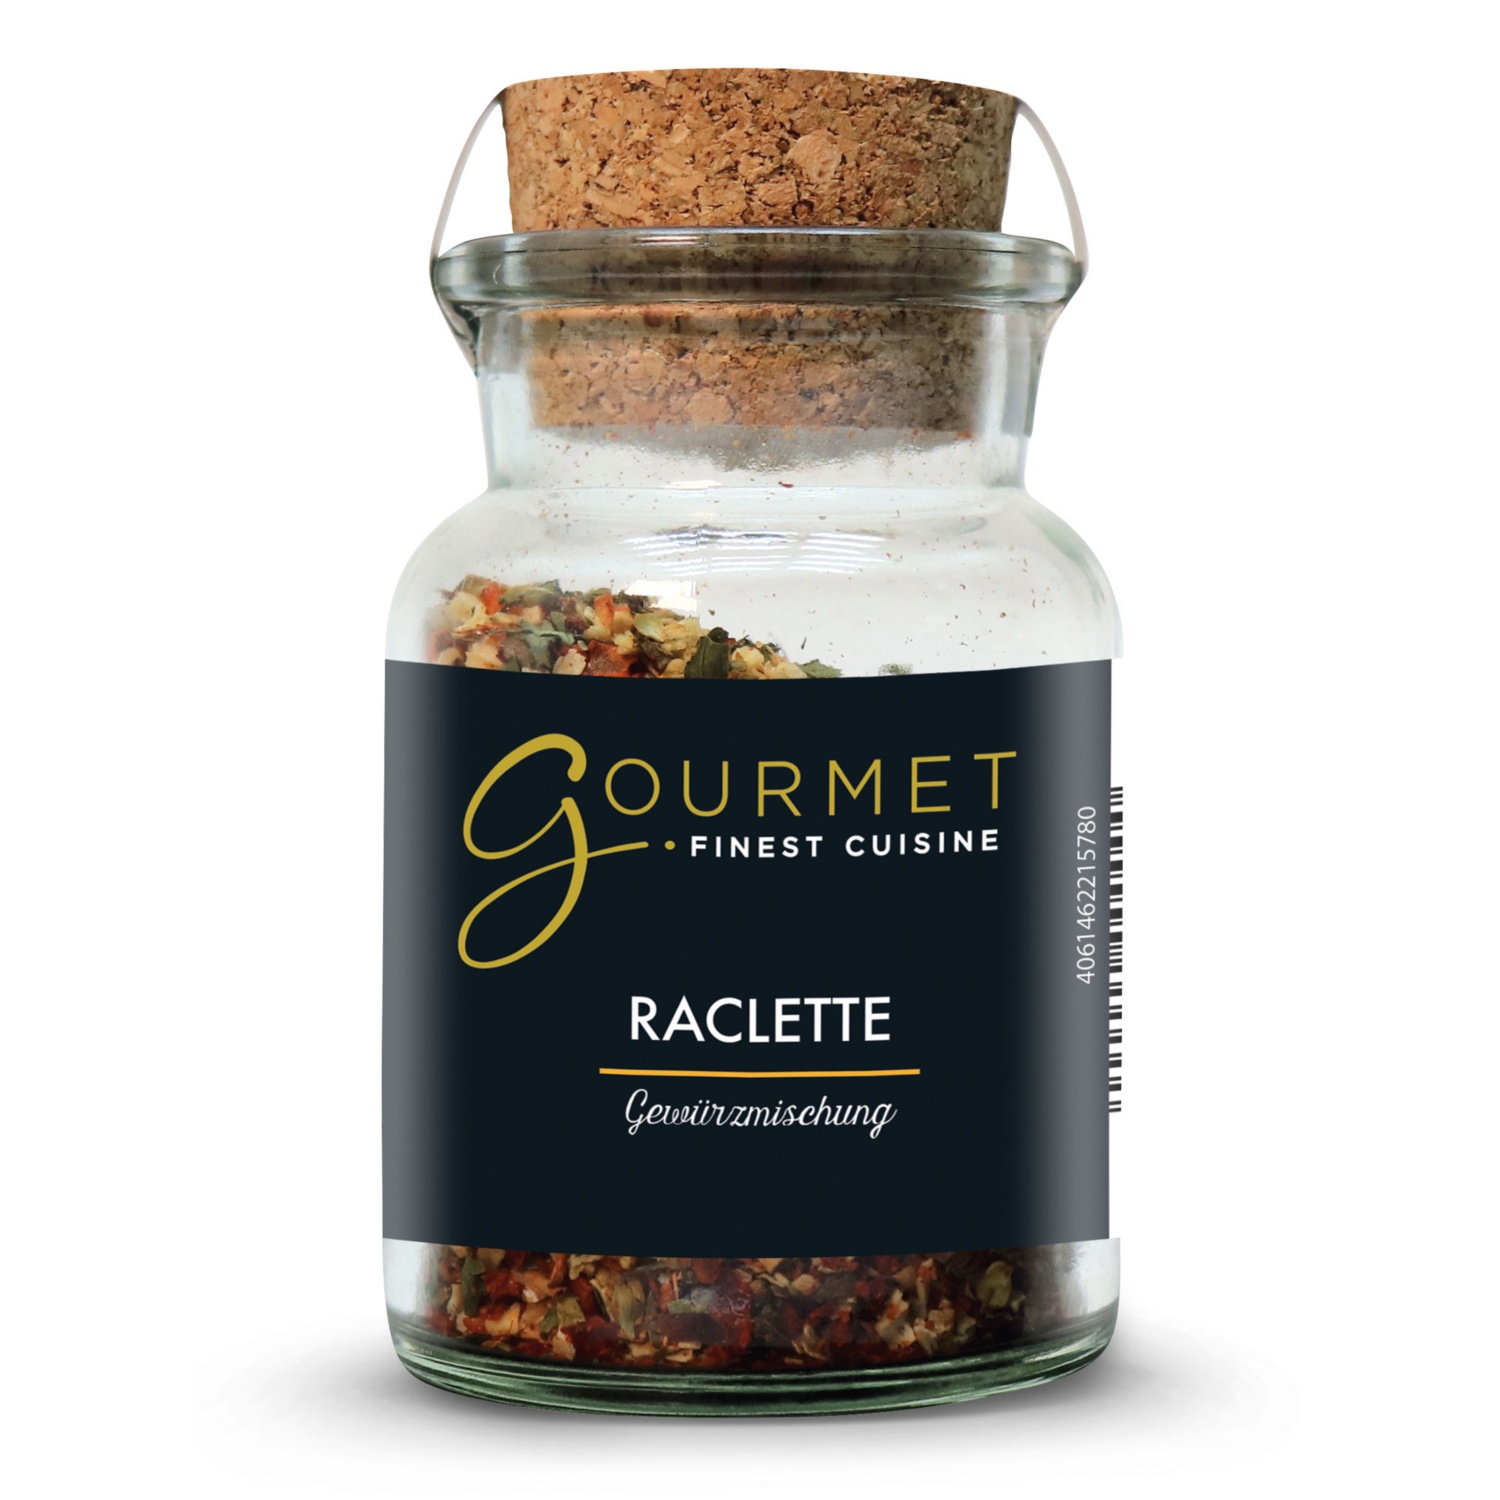 GOURMET Premium Gewürzmischung, Raclette